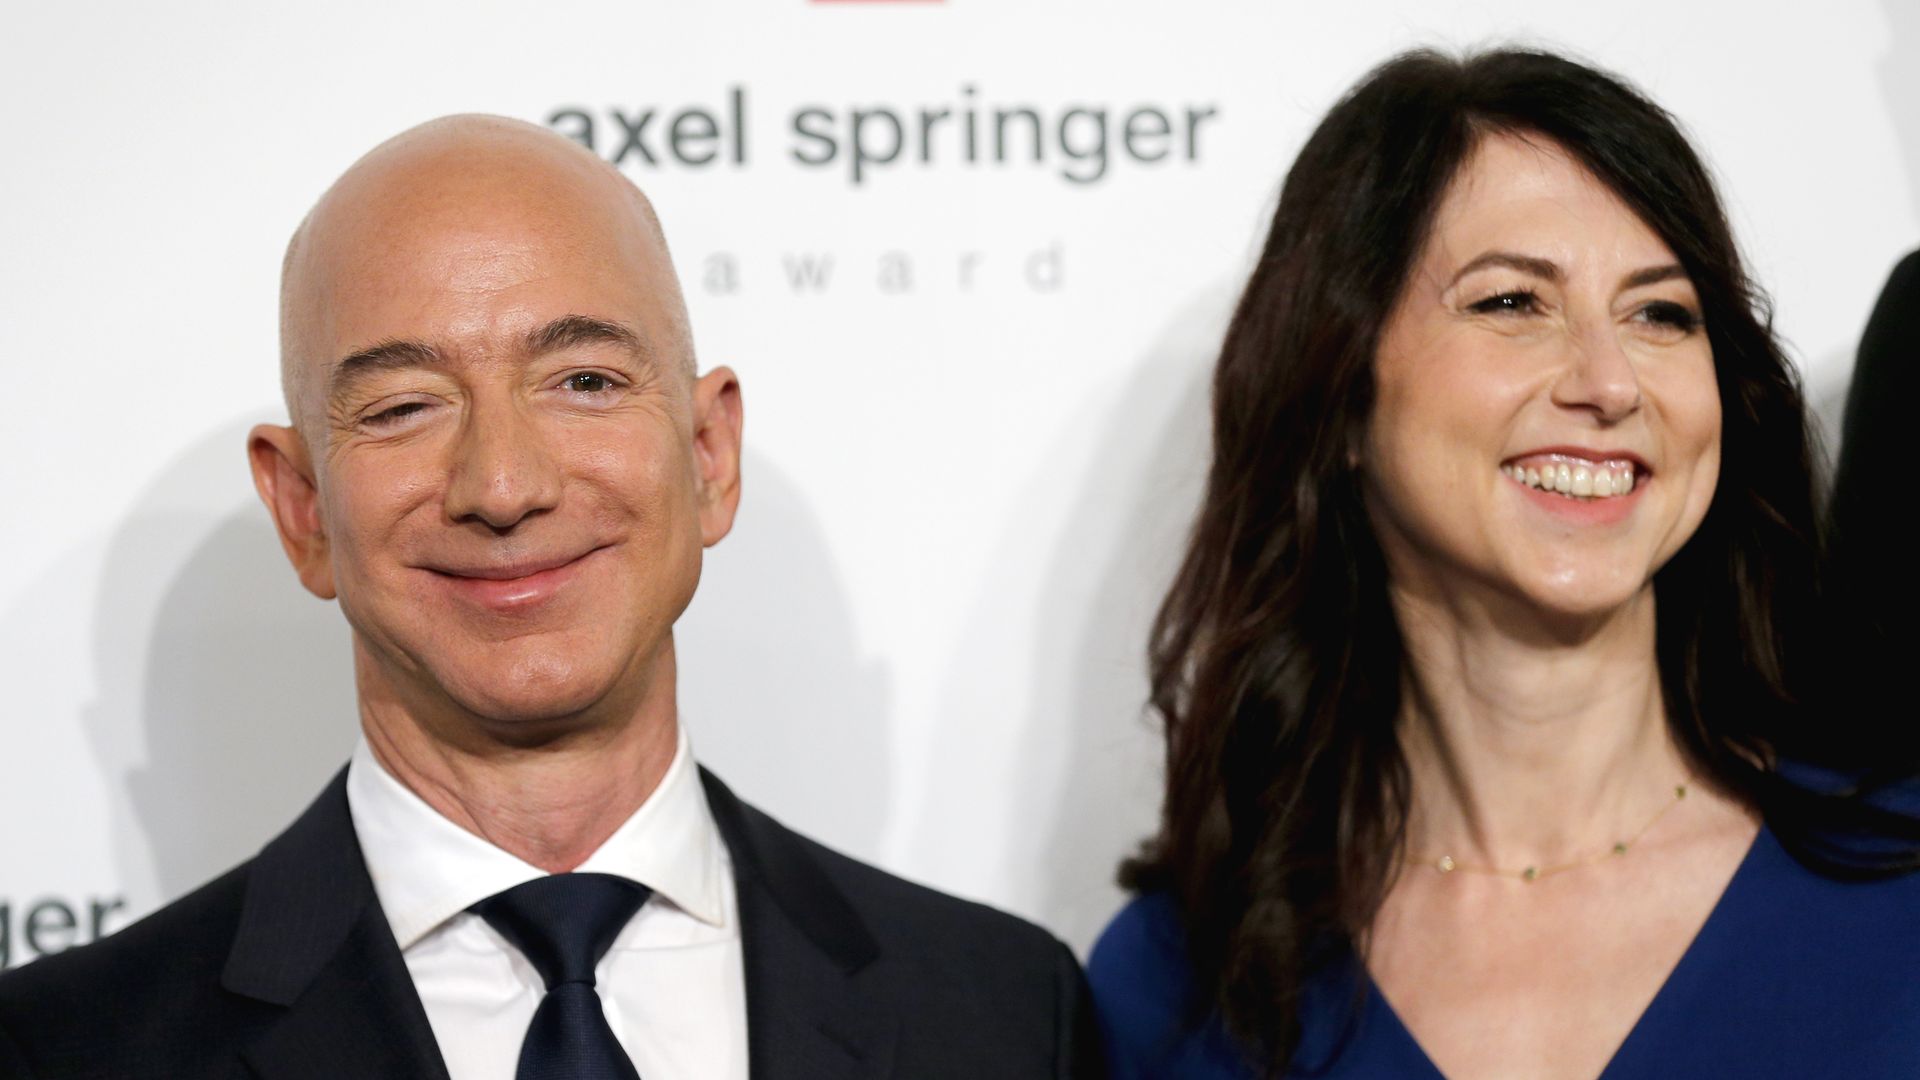 Jeff Bezos stands next to his wife MacKenzie